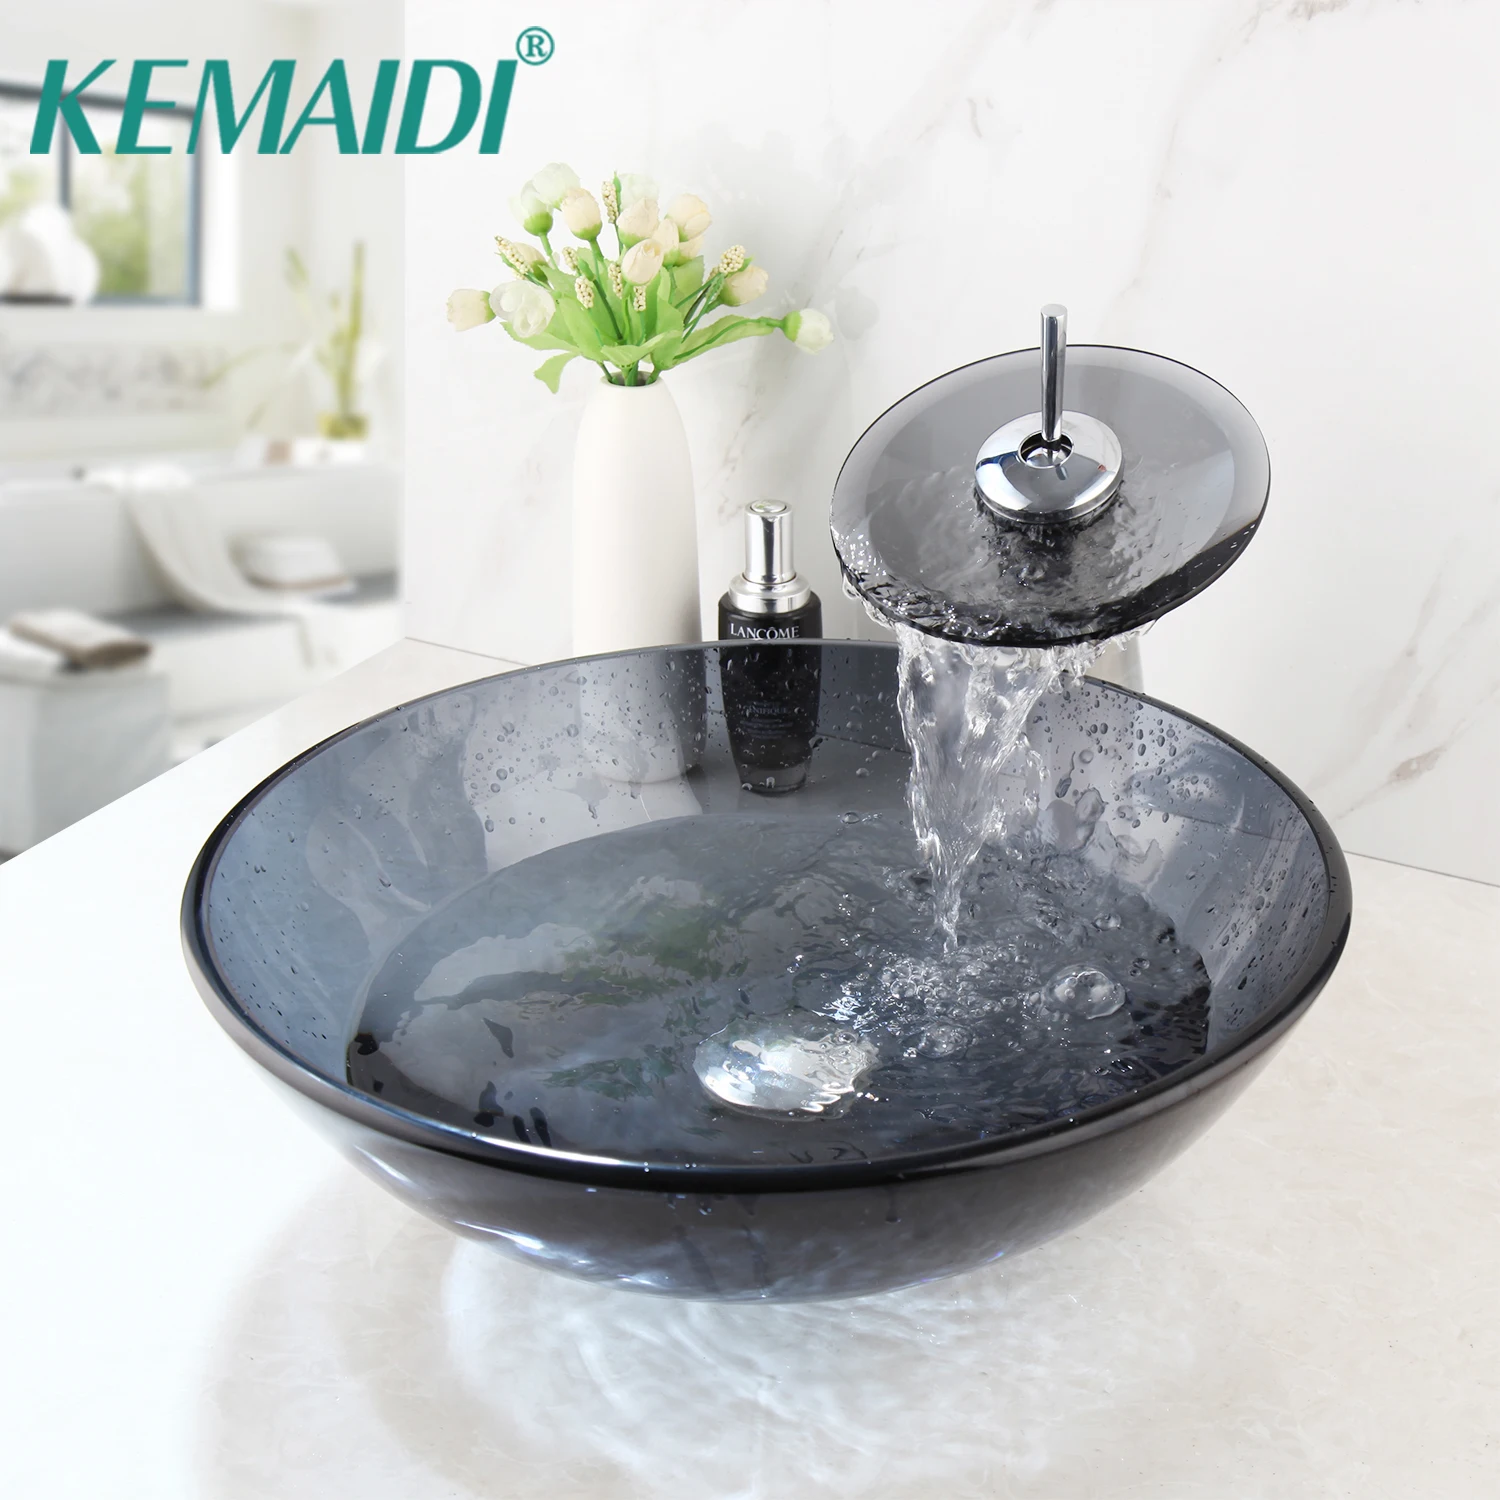 

KEMAIDI Grey Bathroom Tansparent Artistic Glass Vessel Sink Mixer Faucet & Pop Drain Combo Artistic Glass Vessel Vanity Sink Set